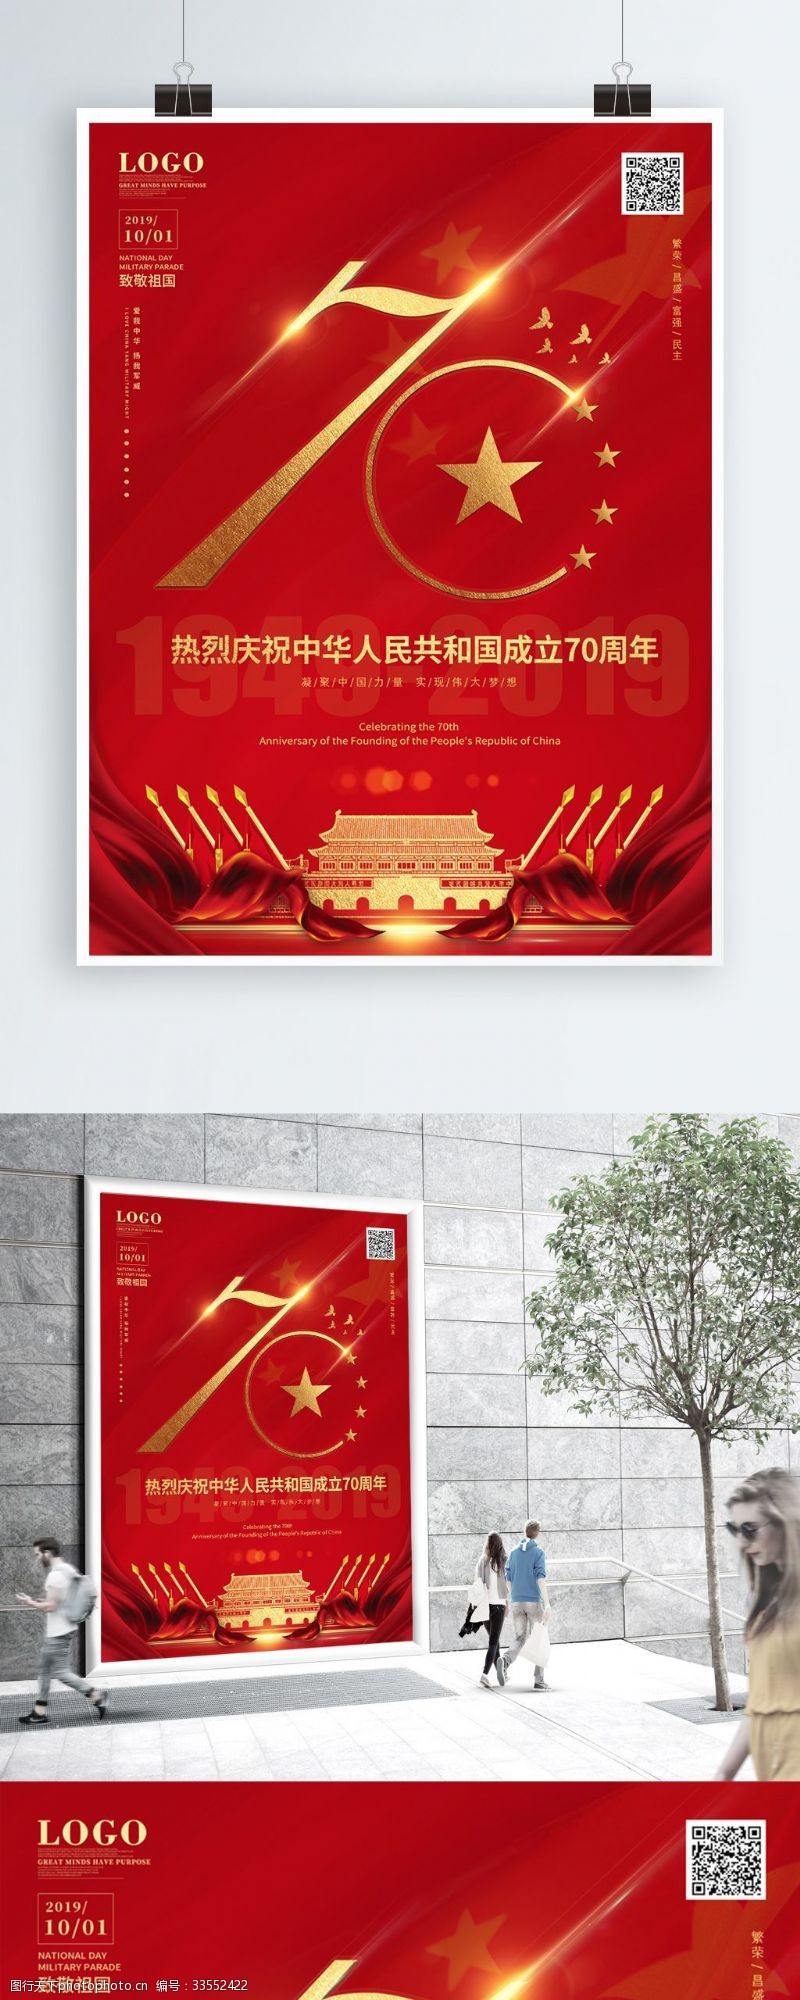 党旗祝贺新中国成立70周年国庆节宣传海报